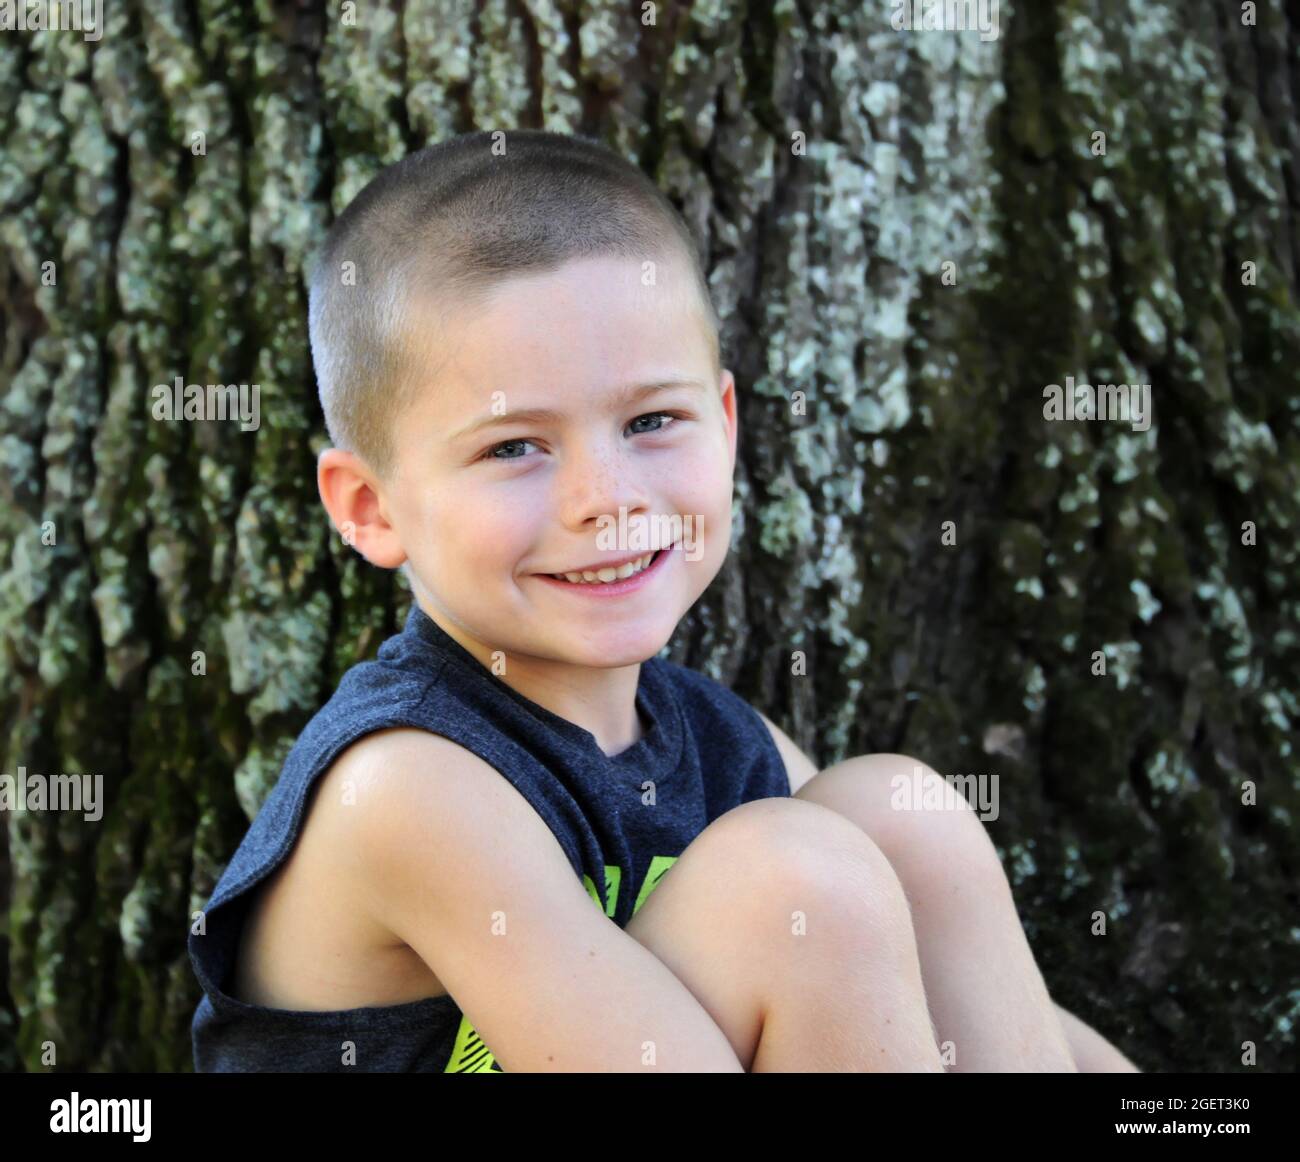 Il sorriso boyish si diffonde attraverso questo faccia dei ragazzi piccoli. È seduto al di fuori di un albero e guarda la macchina fotografica. Foto Stock